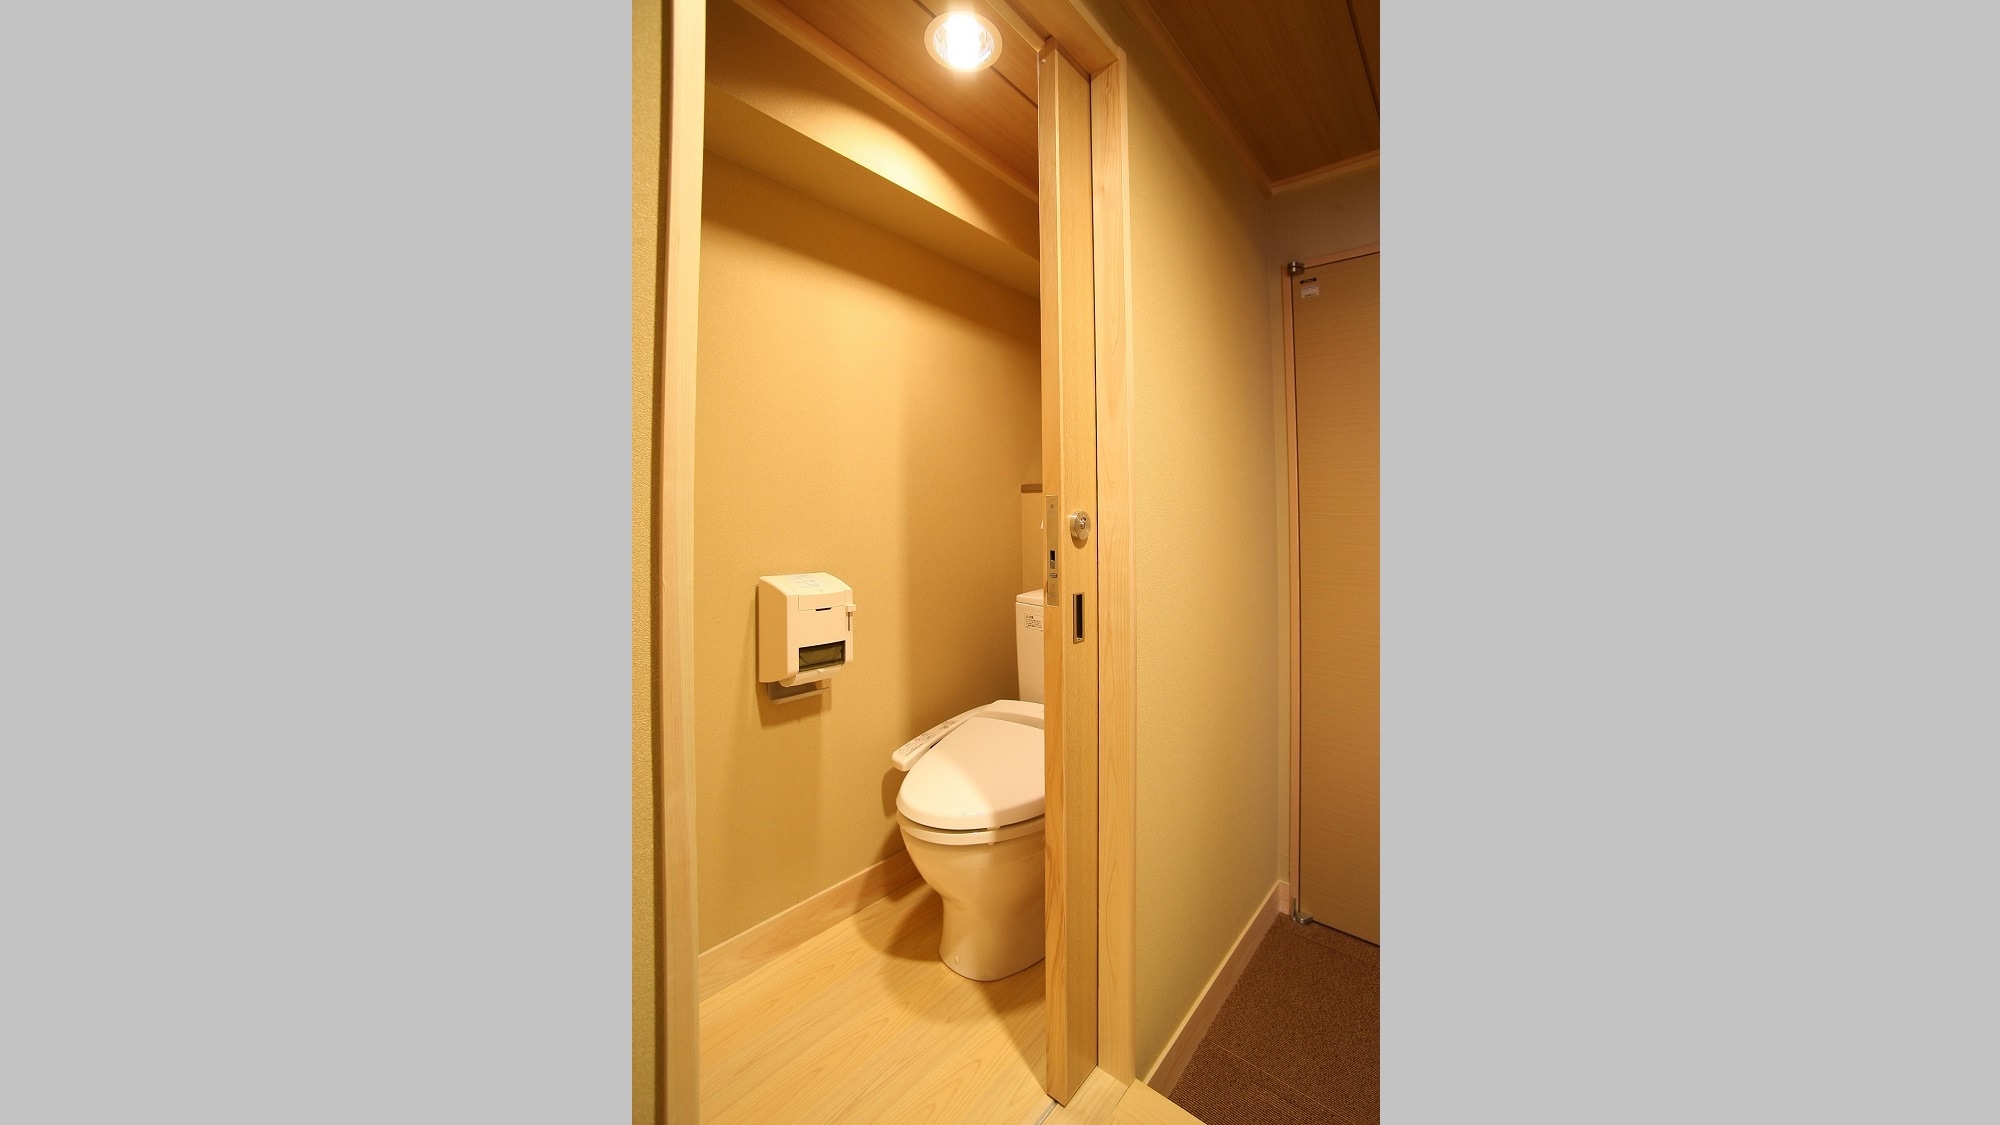 ◆ 일본식 방 8 다다미 화장실